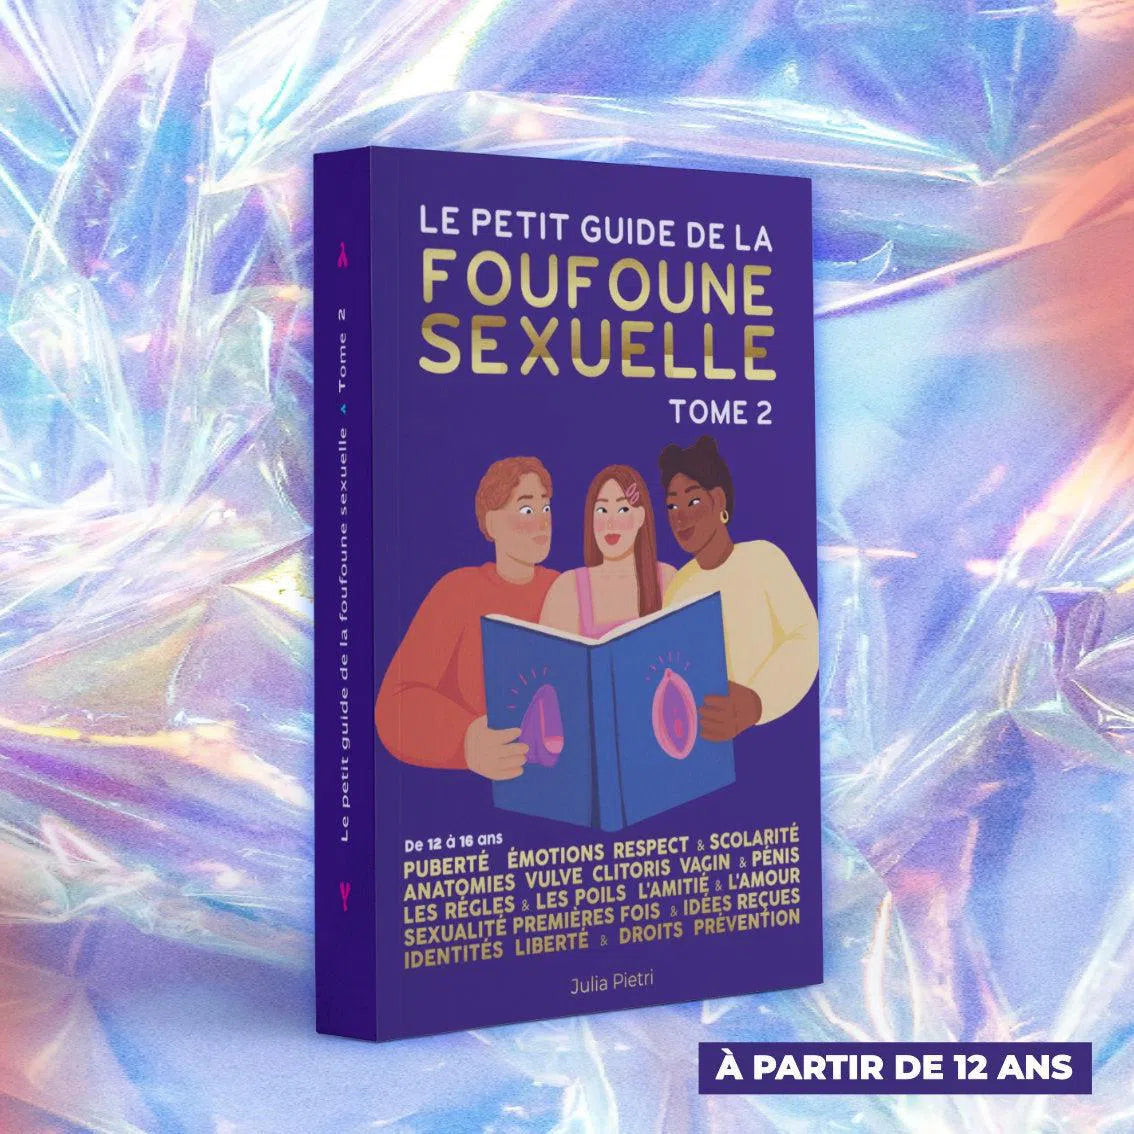 Le petit guide de la foufoune sexuelle tome 2 de Julia Pietri qui est un livre d'éducation sexuelle pour les adolescents